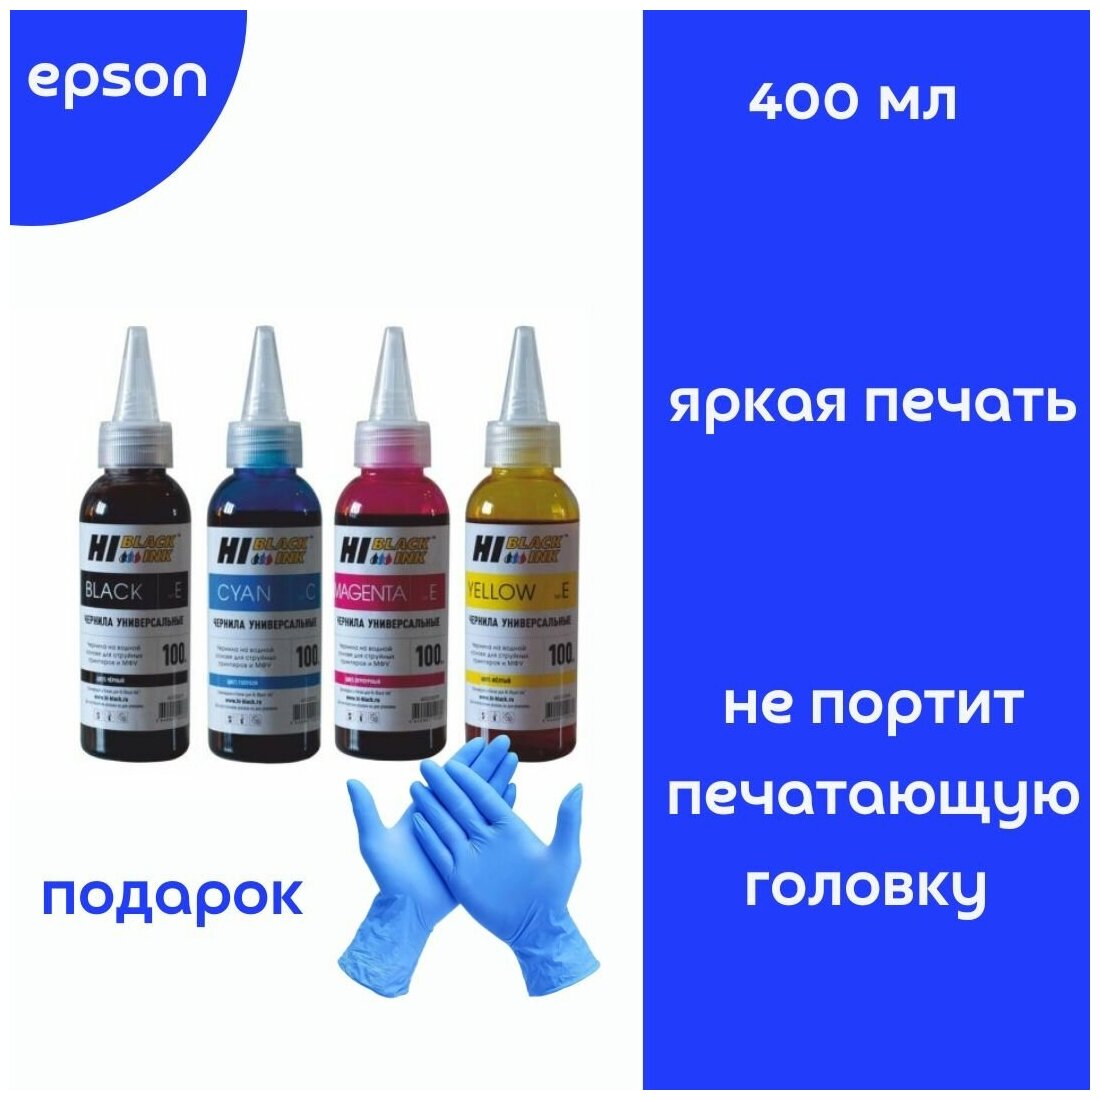 Универсальные чернила (краски) для принтеров и МФУ EPSON (4 цвета по 100мл.) + перчатки — купить в интернет-магазине по низкой цене на Яндекс Маркете